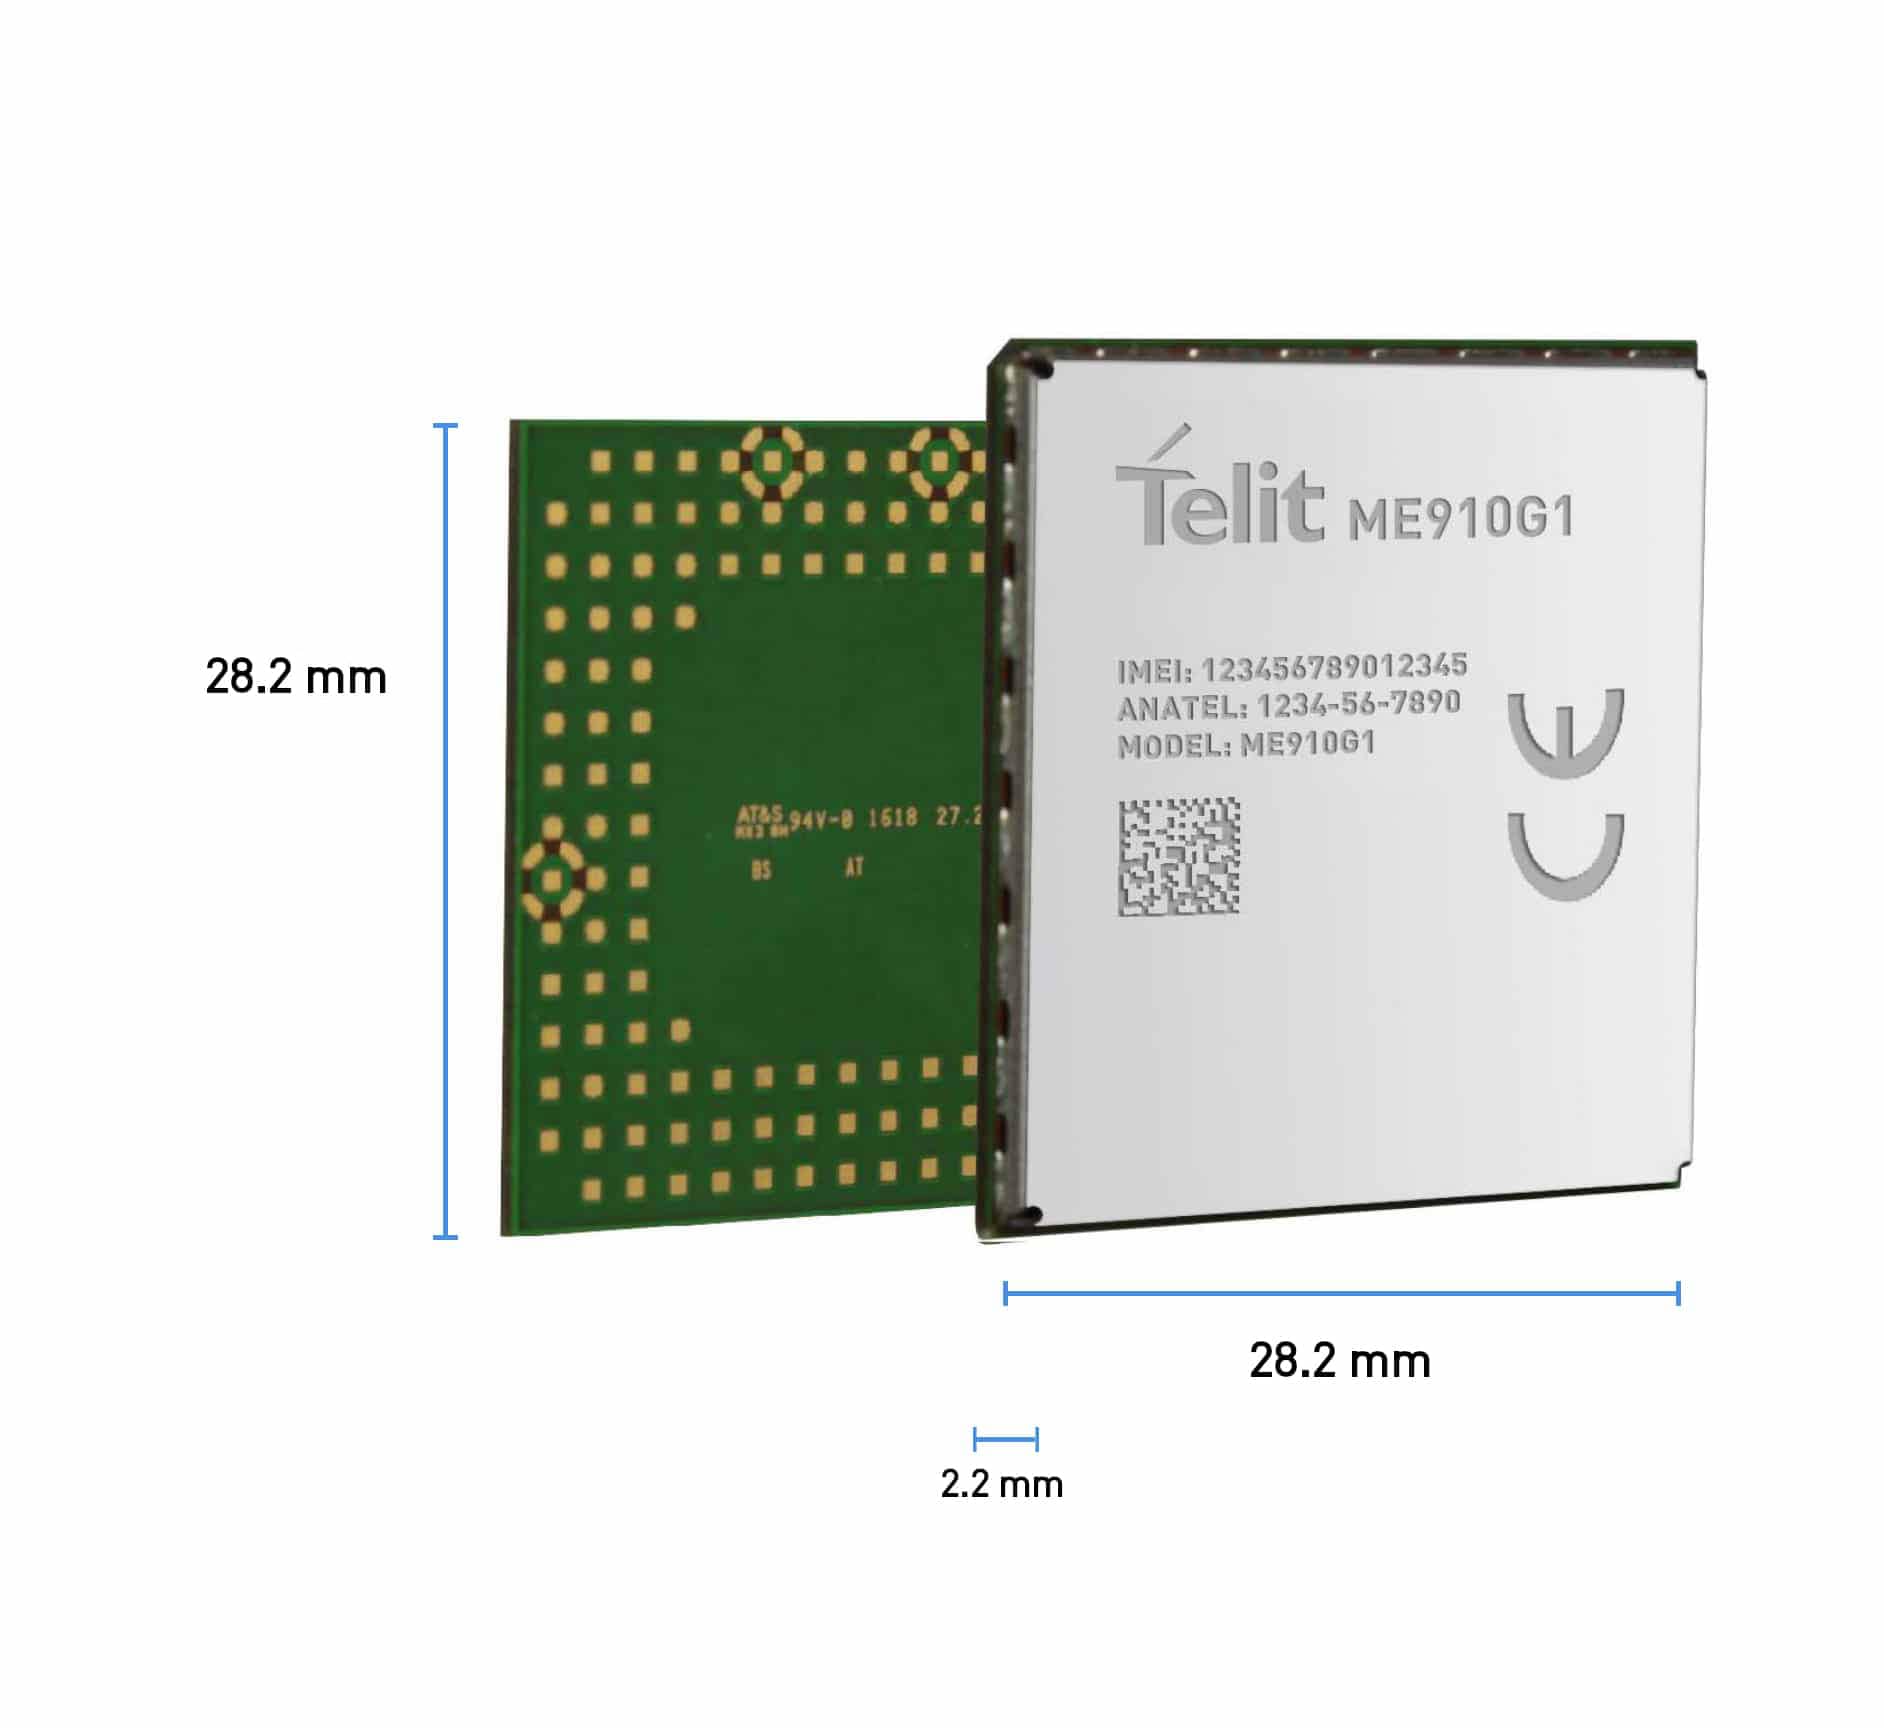 Telit ME910G1 cellular LPWA IoT module, a member of the xE910 form factor family.